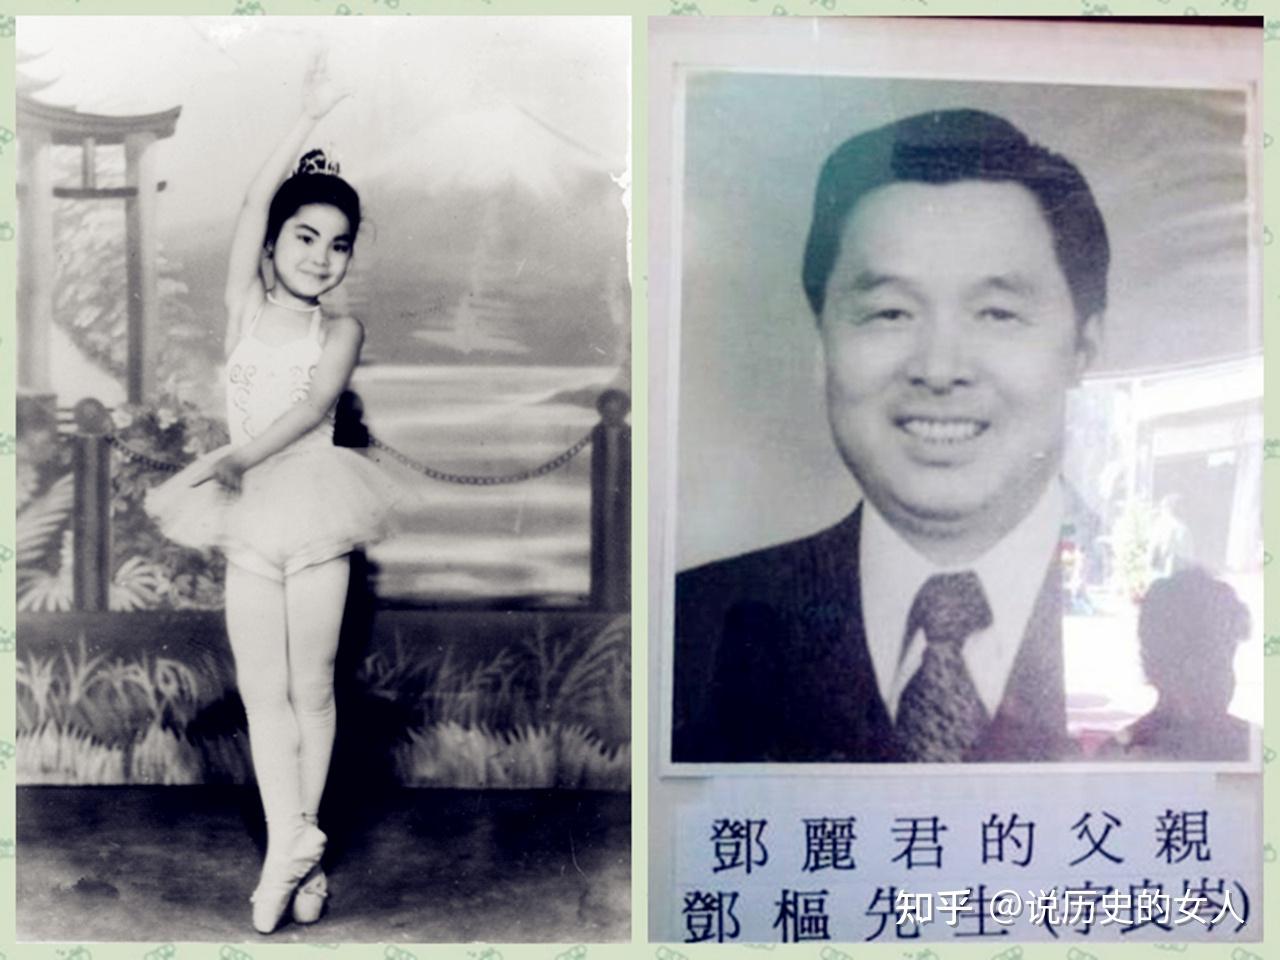 邓丽君去世一个月,国民党少将谷正文爆料:邓丽君是台湾女间谍